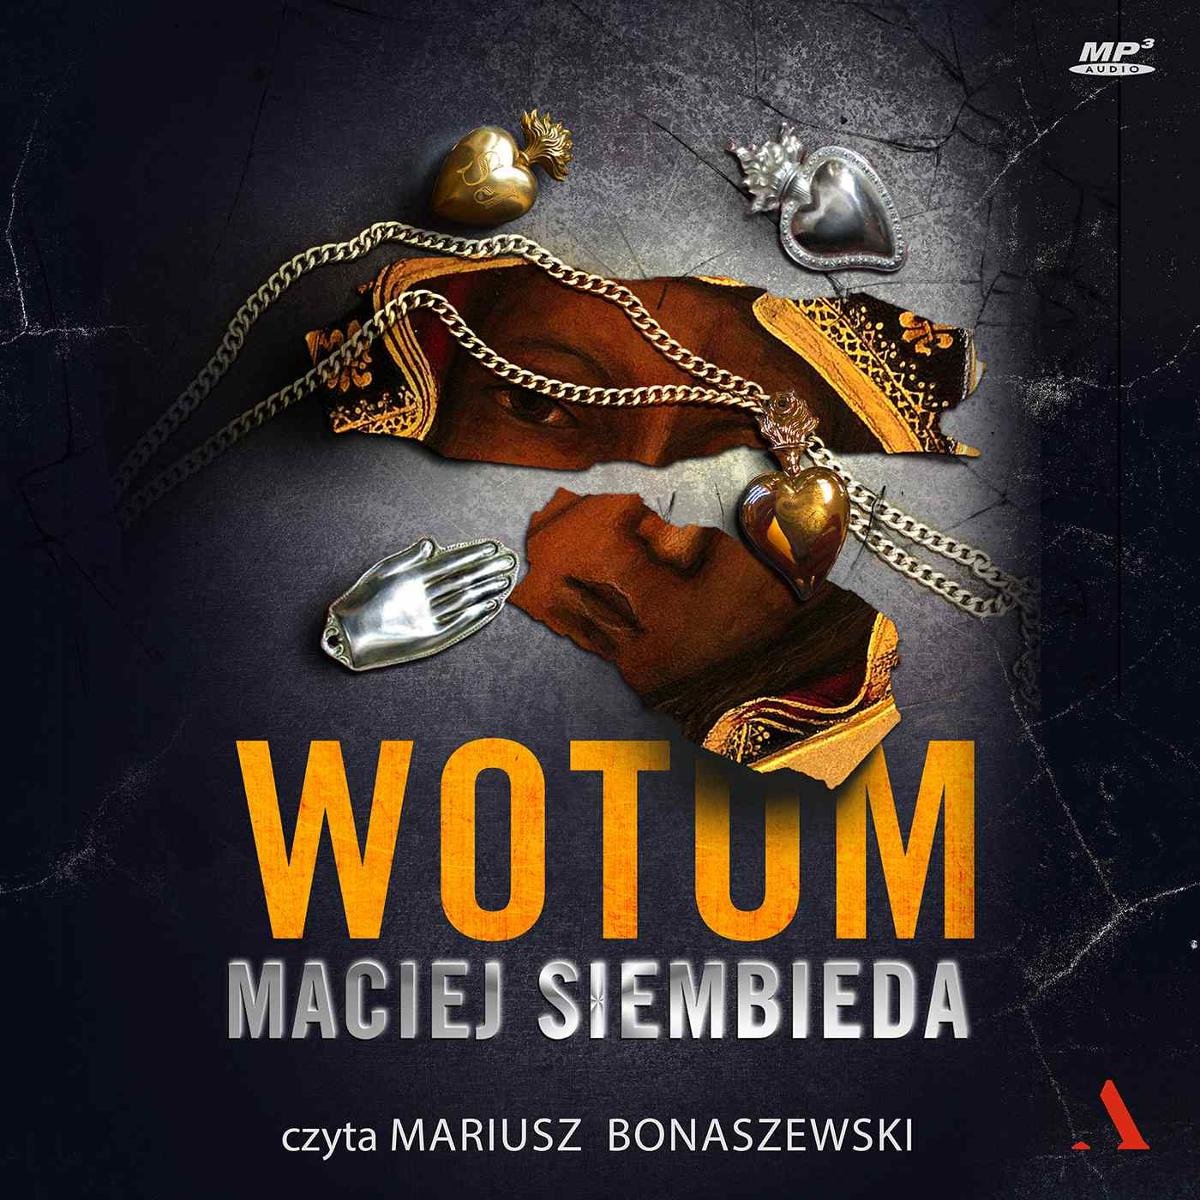 okładka audiobooka pod tytułem Wotum, autor Maciej Siembieda